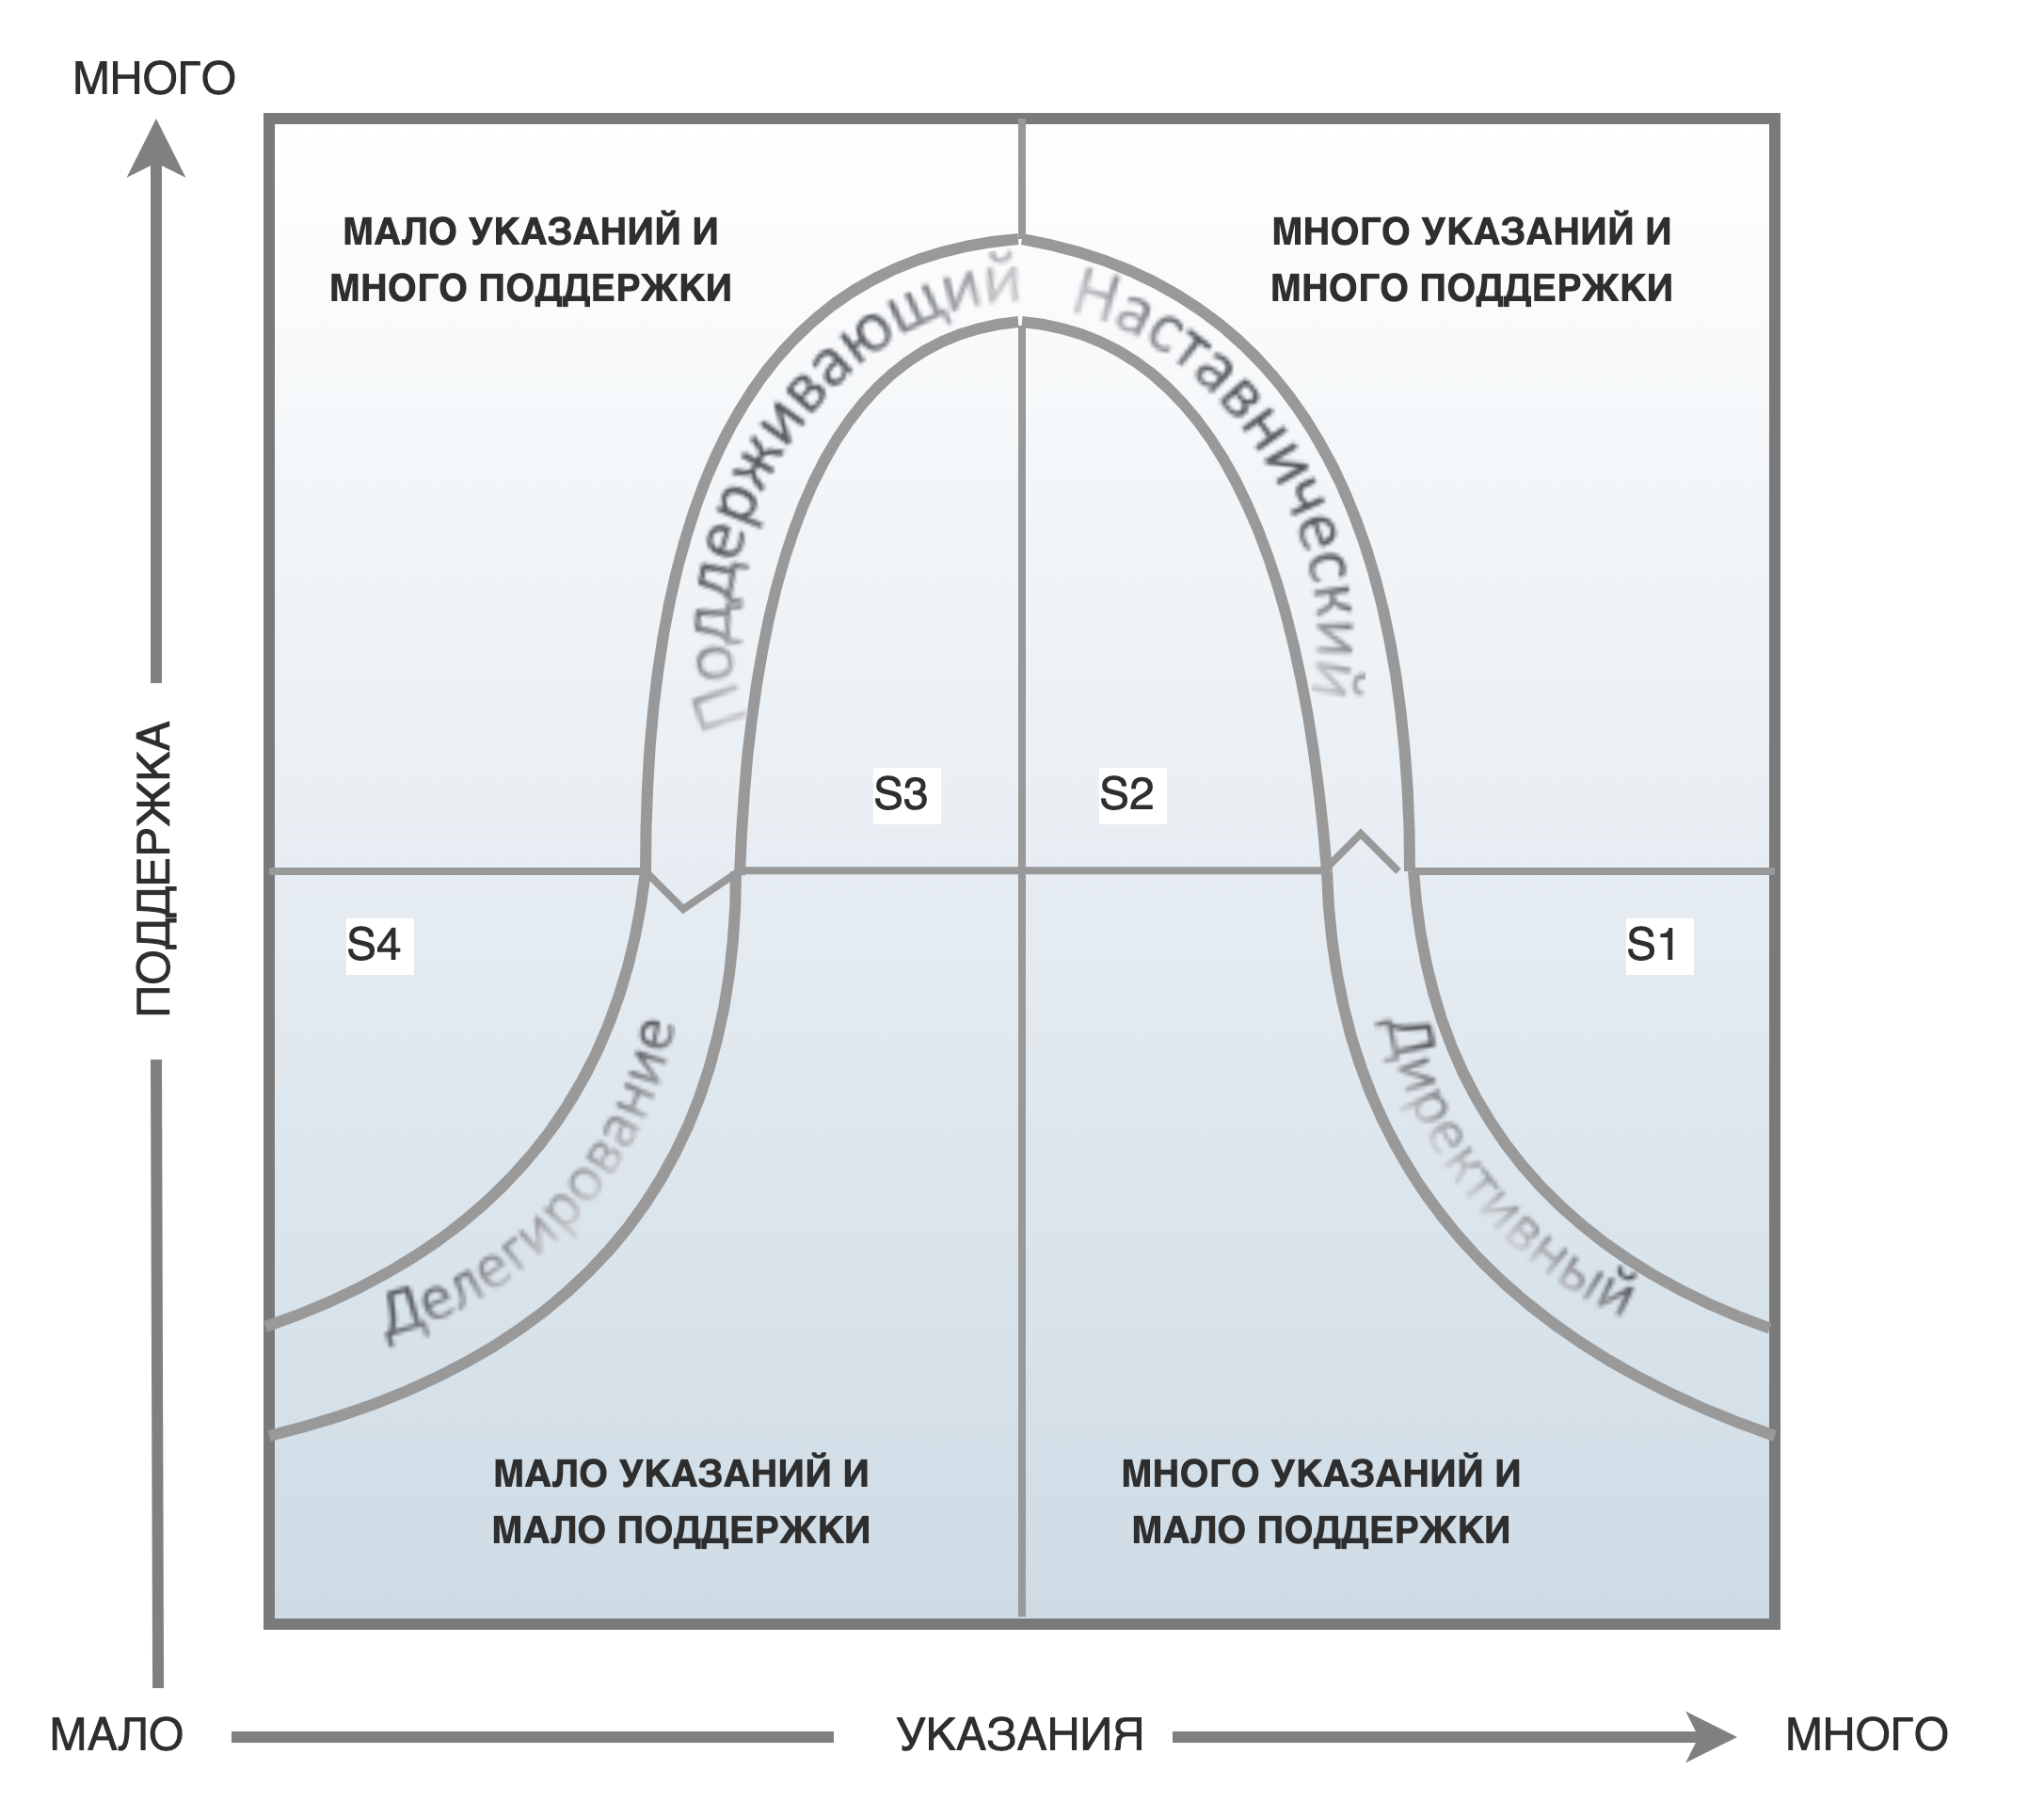 Стили управления Херси и Бланшара. Модель жизненного цикла Херси и Бланшара. Херси и Бланшар ситуационное лидерство. Модель лидерства Херси - Бланшар. Ситуационное руководство стили